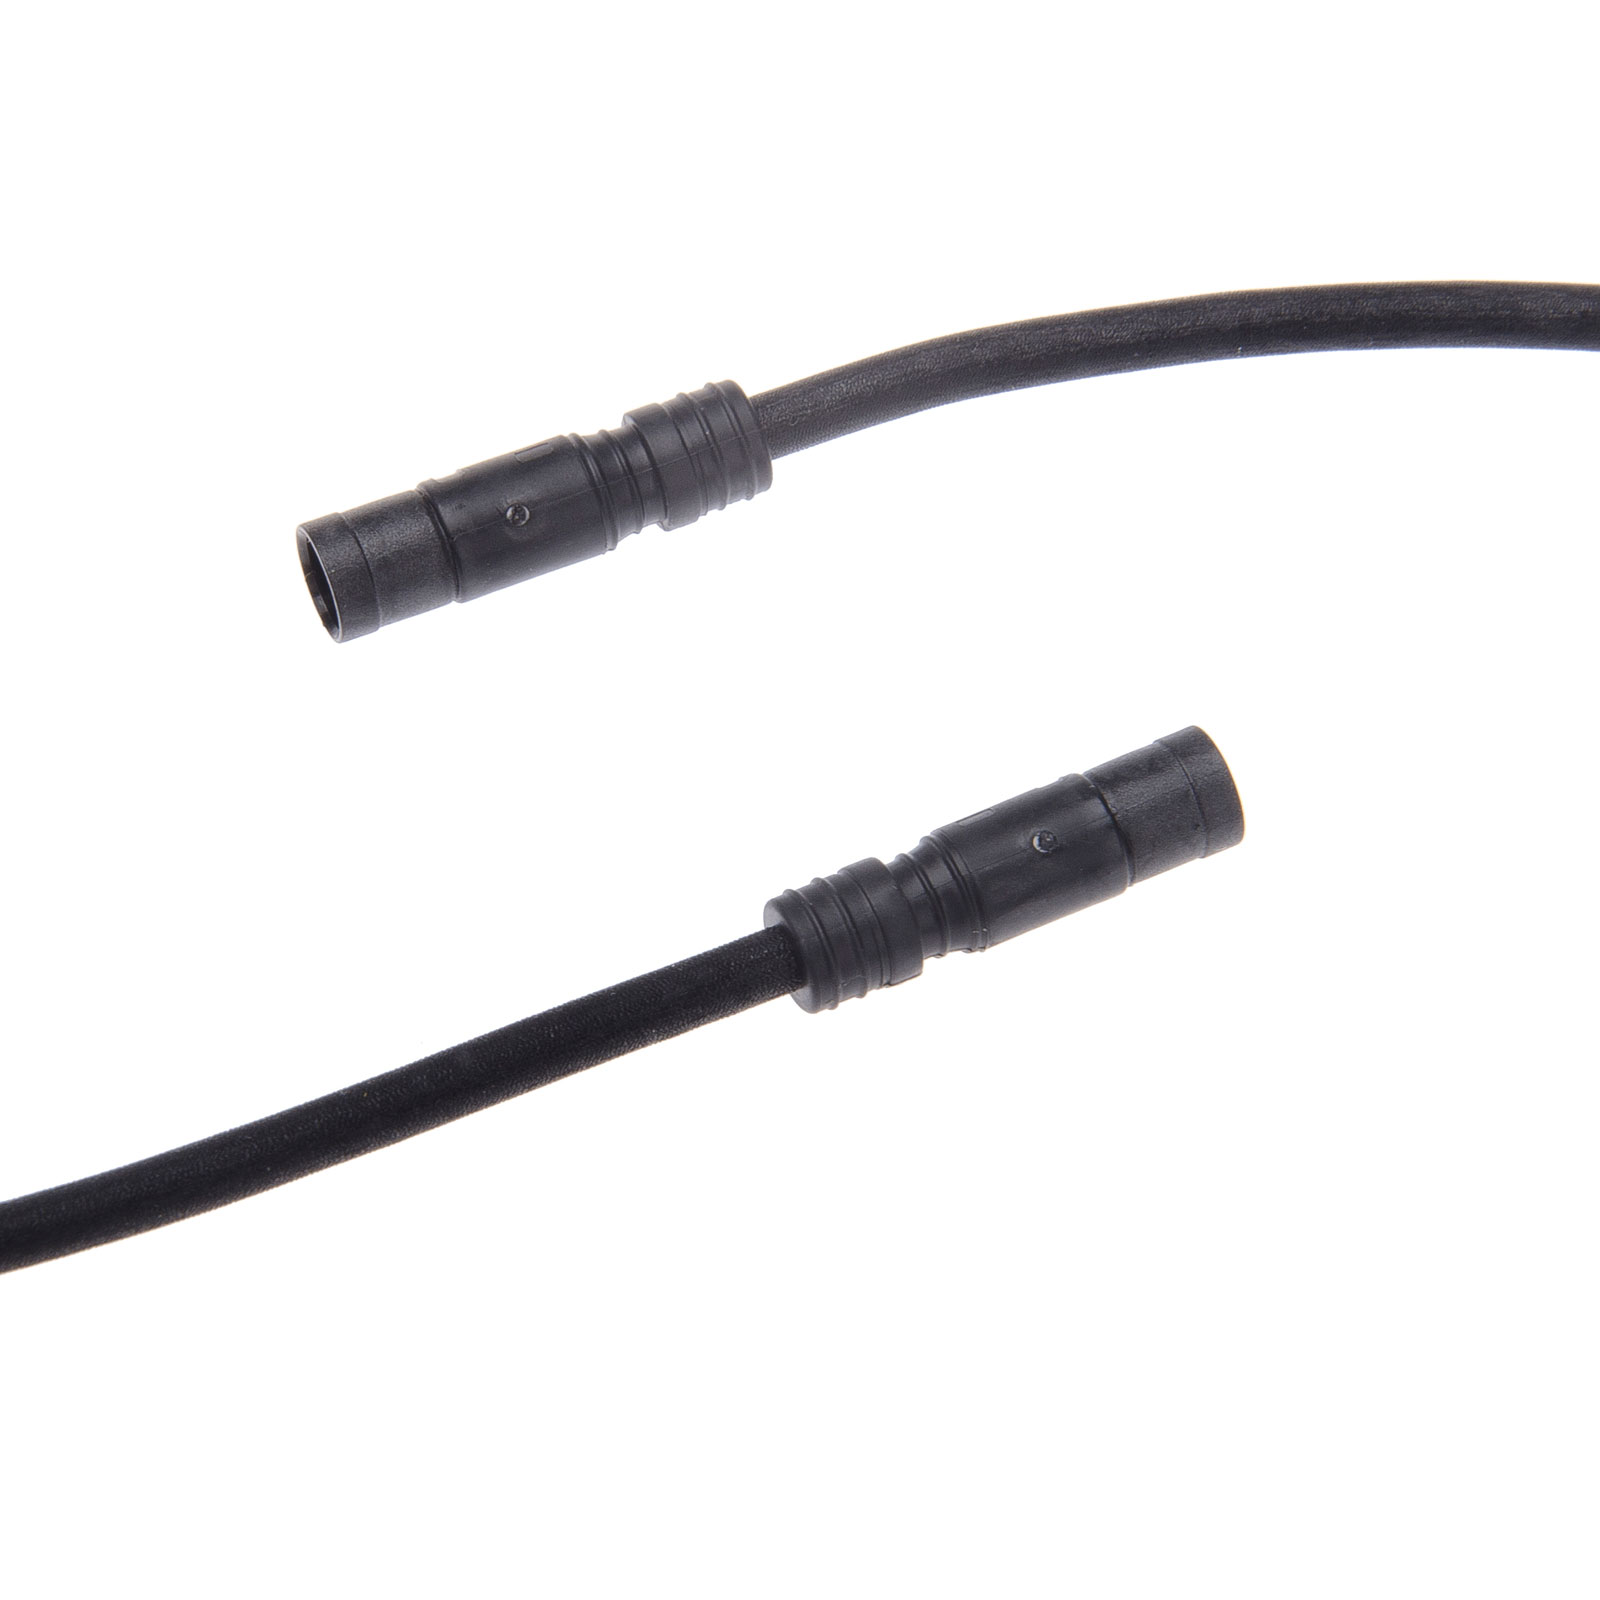 Productfoto van Shimano EW-SD50 Kabel voor Di2